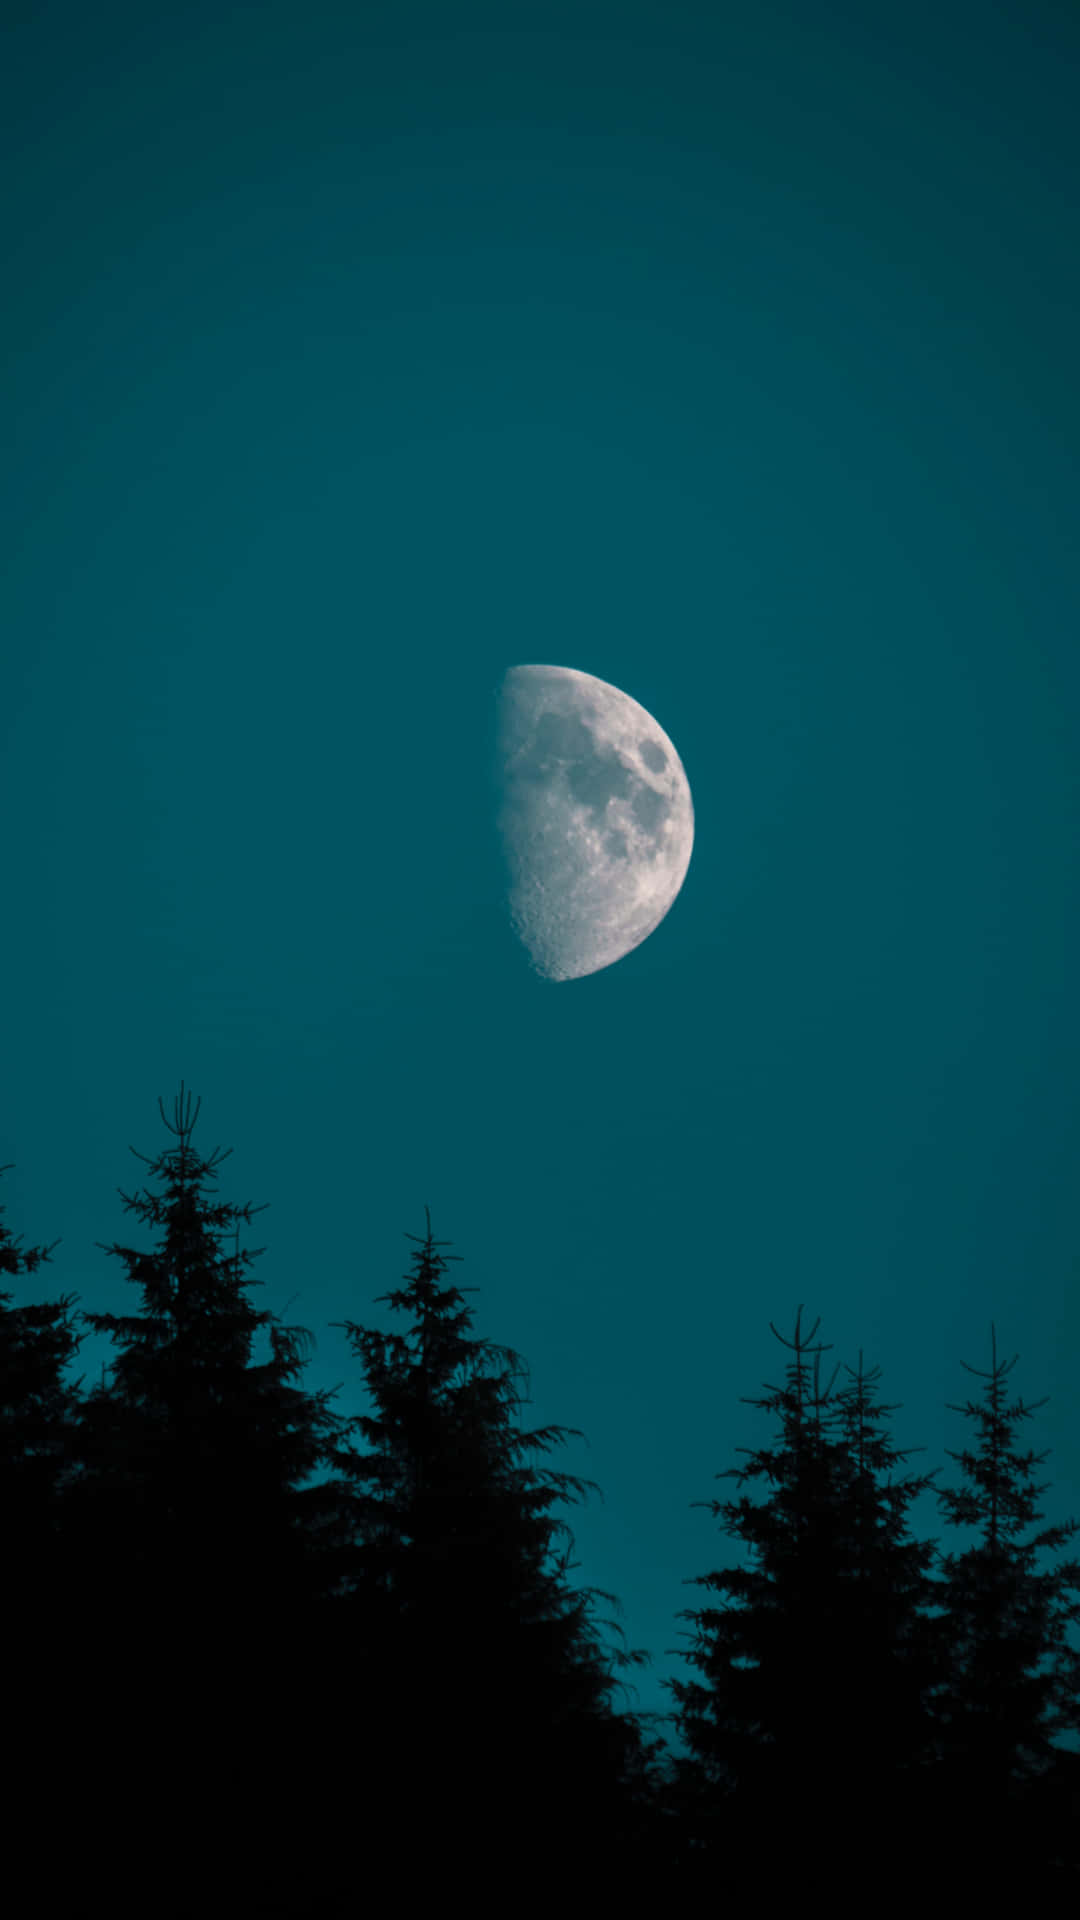 Lasilueta De La Luna En Los Árboles Del Iphone. Fondo de pantalla